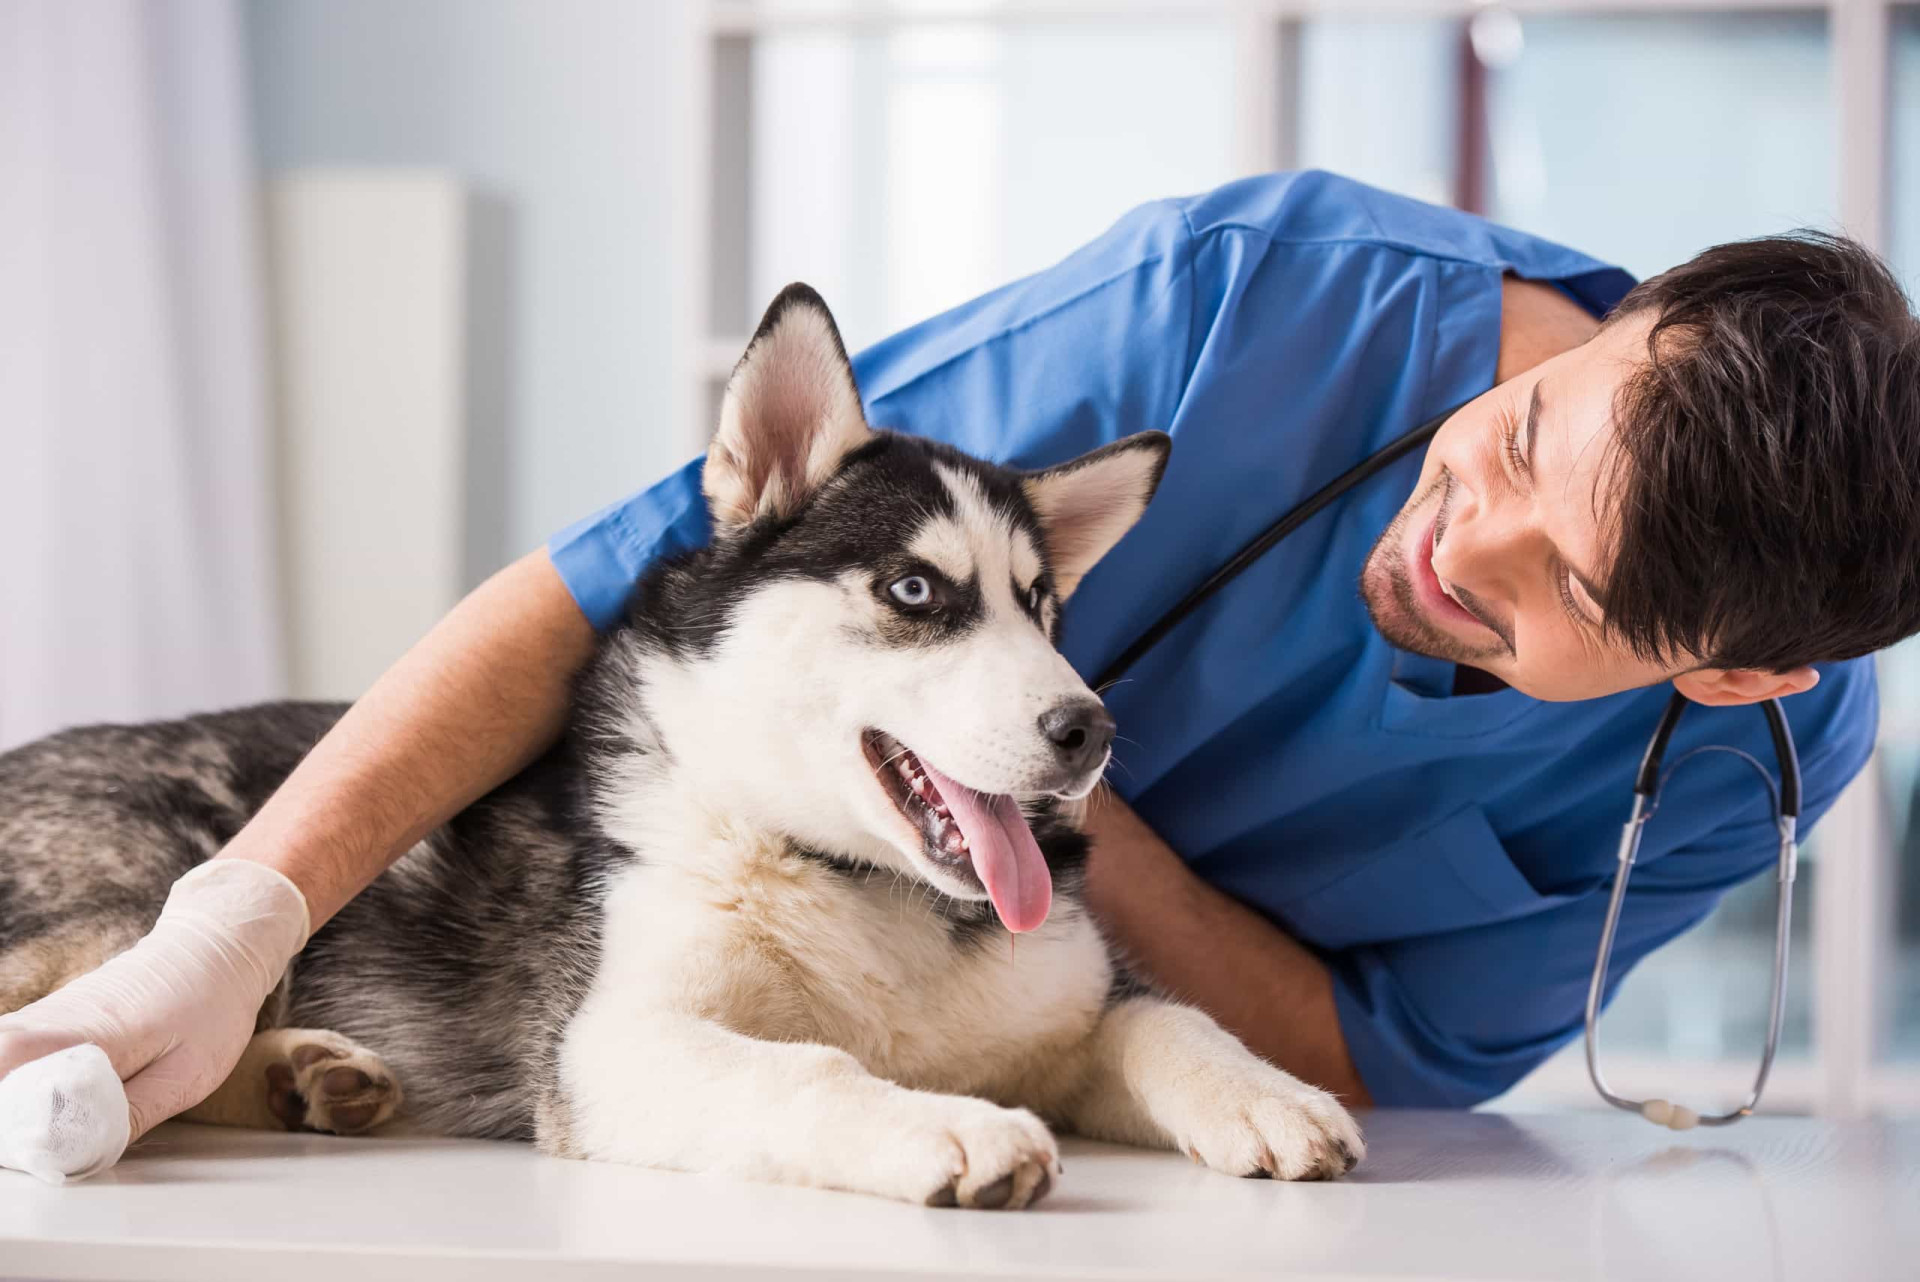 <p>Il est bon de penser à contrôler la santé de votre animal avant de partir: rendez-vous chez un vétérinaire pour vérifier qu'il est prêt à voyager.</p>